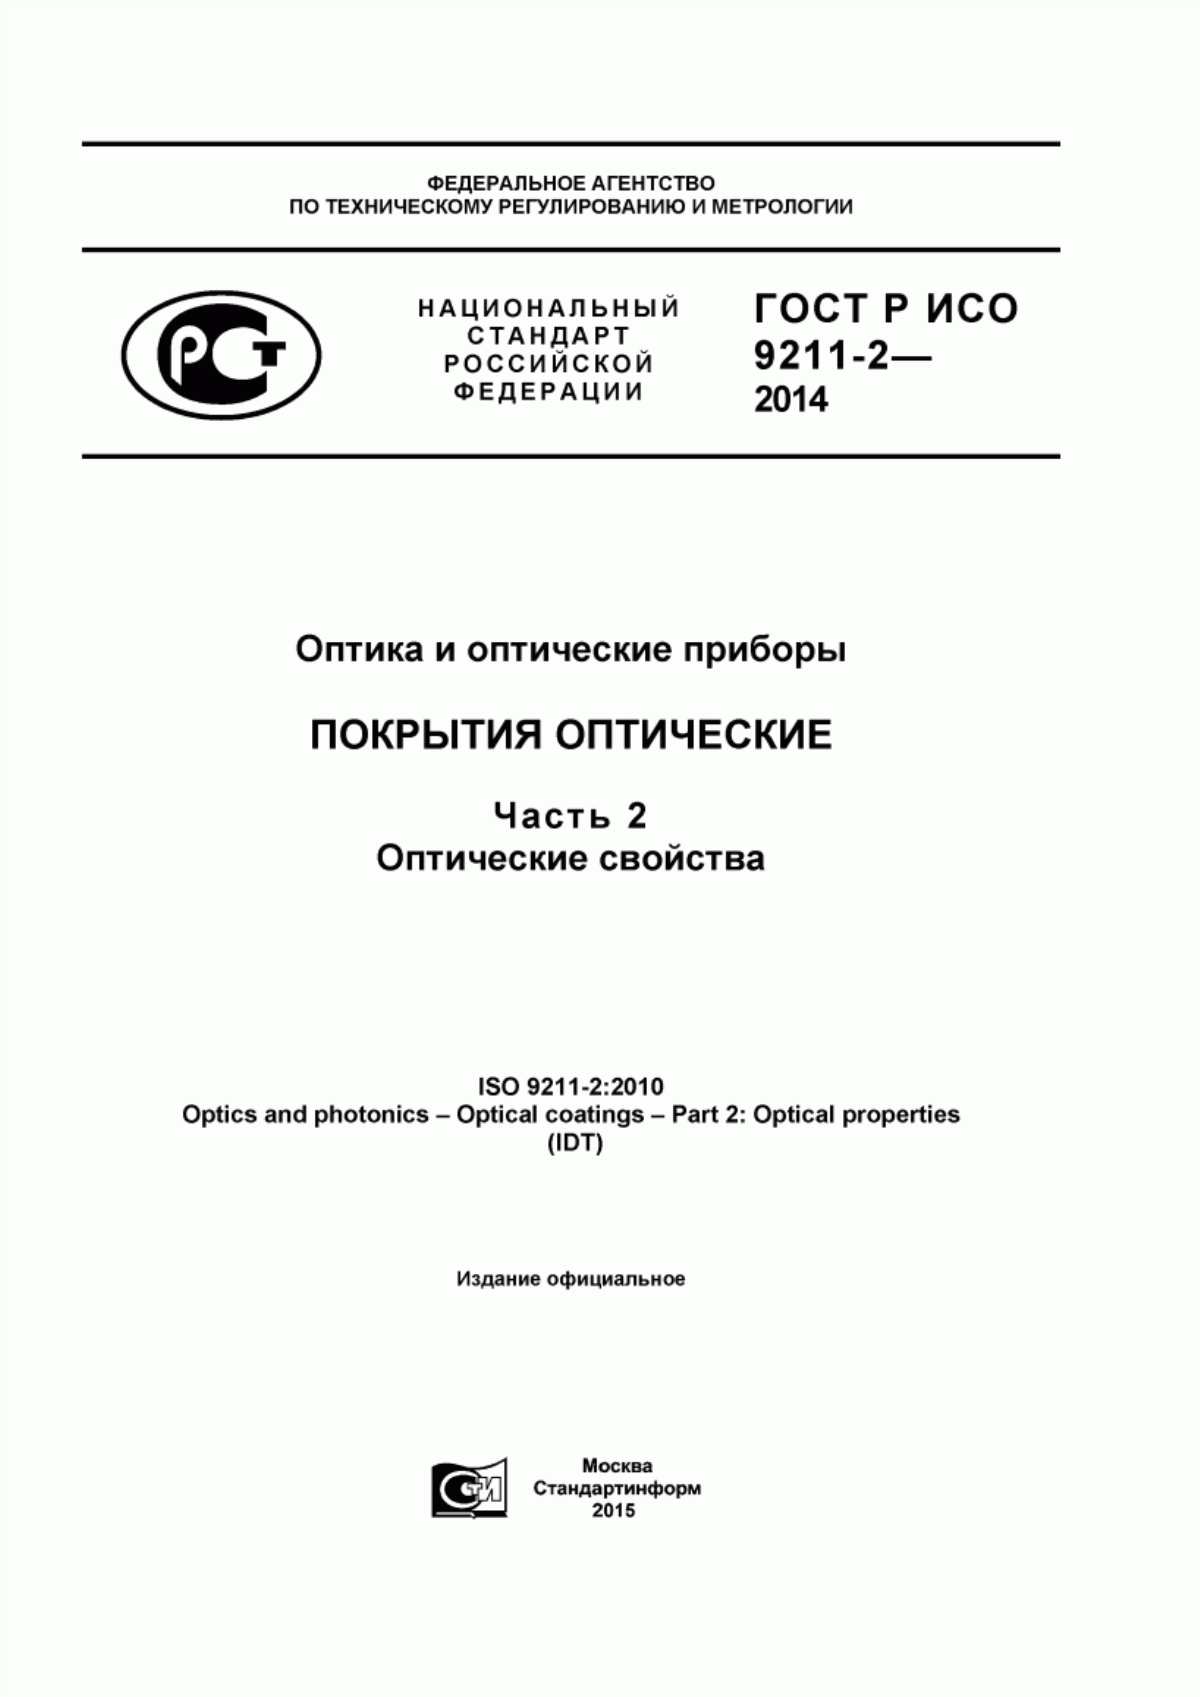 ГОСТ Р ИСО 9211-2-2014 Оптика и оптические приборы. Покрытия оптические. Часть 2. Оптические свойства